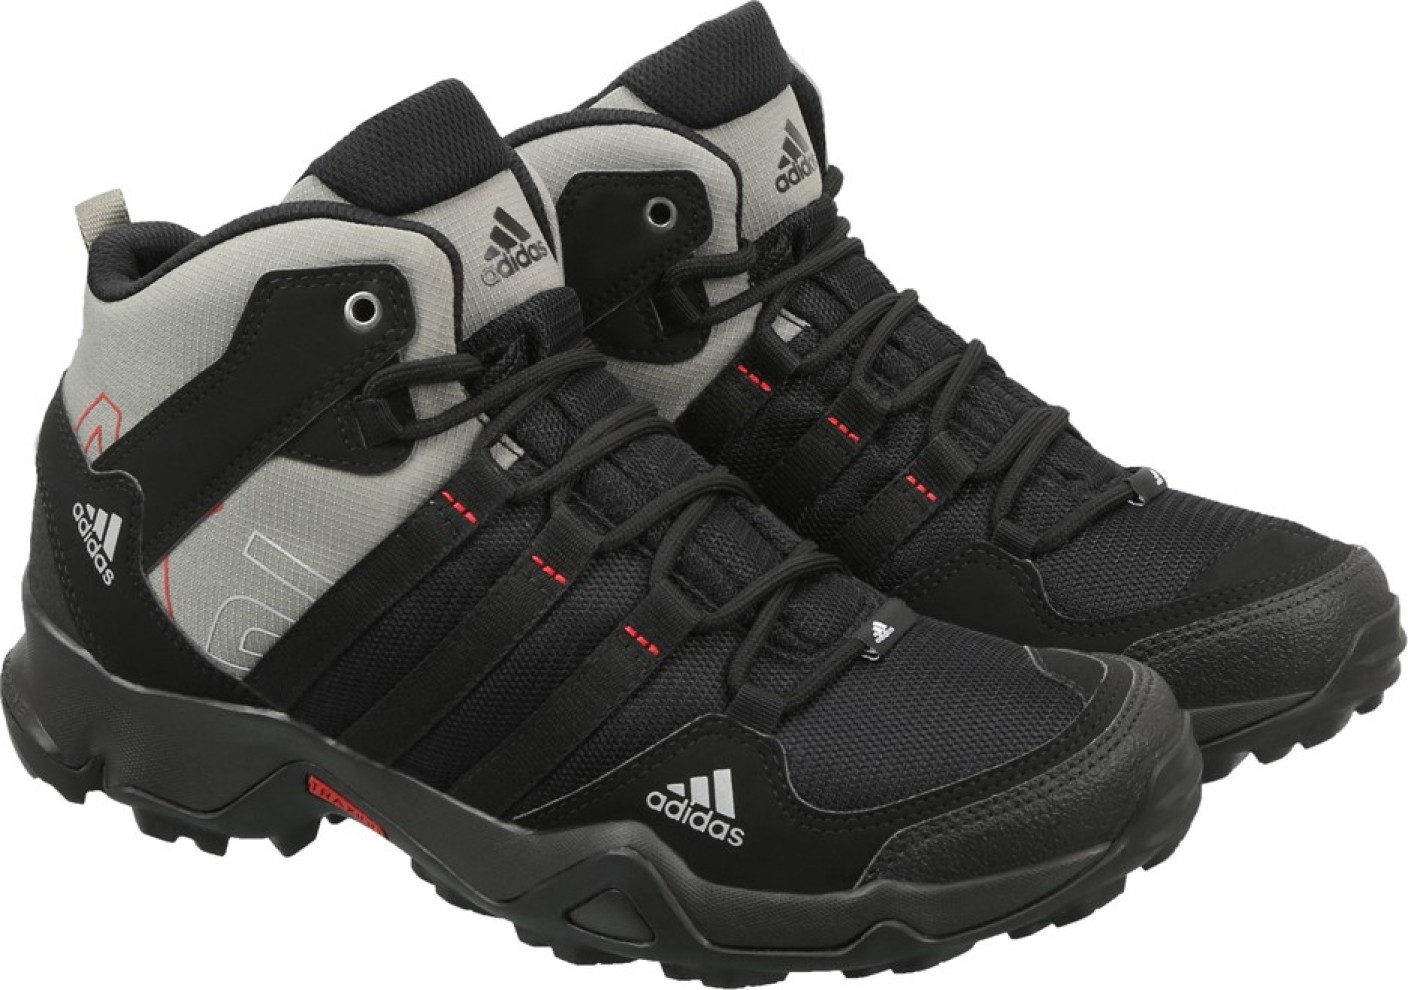 Adidas AX2 MID Outdoor Shoes For Men - Buy CBLACK/CBLACK/TRACAR/SCAR ...